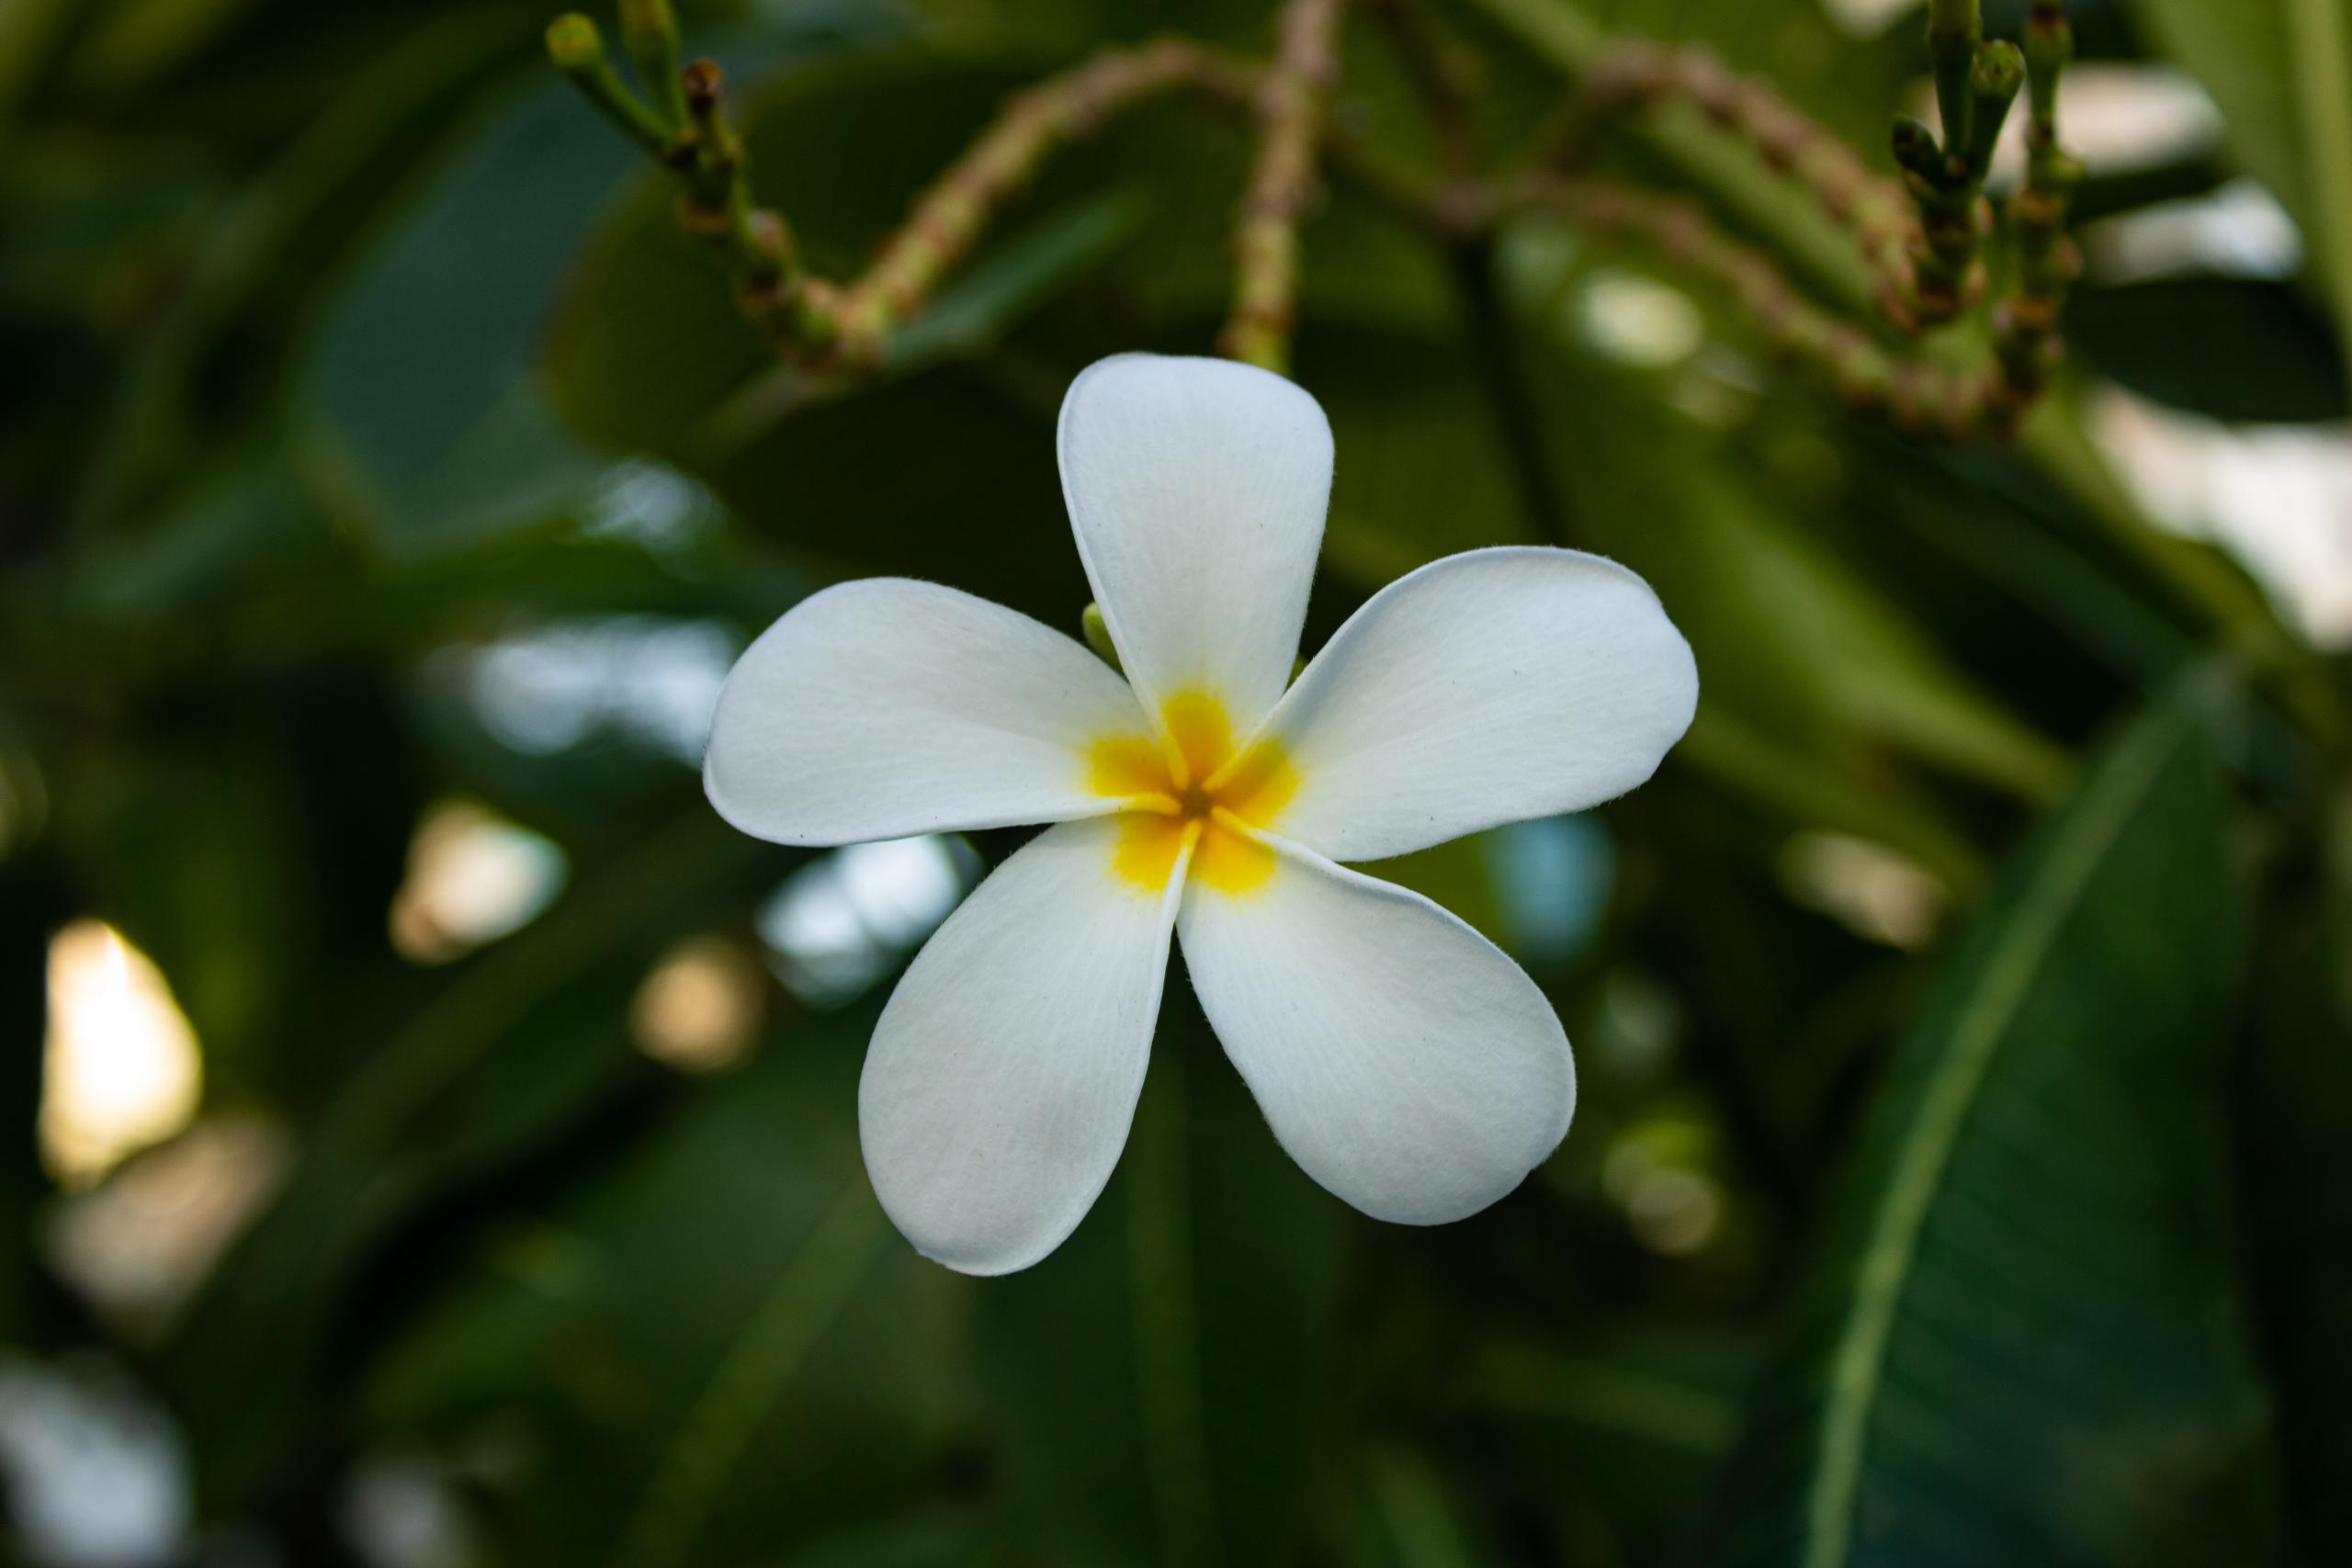 Nahaufnahme einer weißen Frangipani-Blüte am Baum.